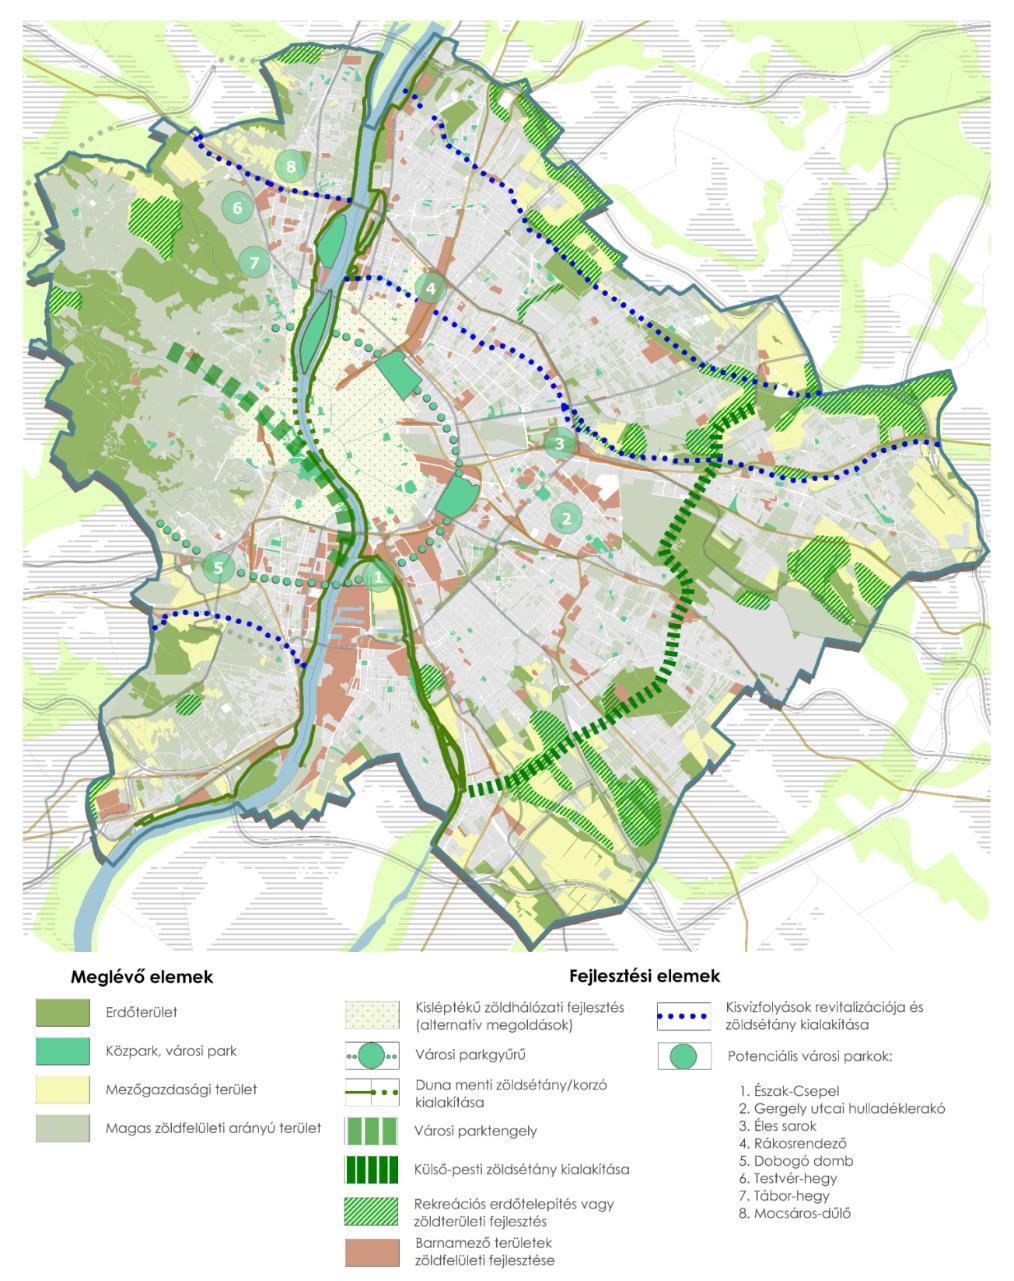 A Margitsziget Városliget Népliget parkok közötti zöldfelületi kapcsolatot erősíteni kell, illetve a távlati fejlesztésektől függően ezt a városi parkgyűrűt meg kell hosszabbítani Dél Buda irányában